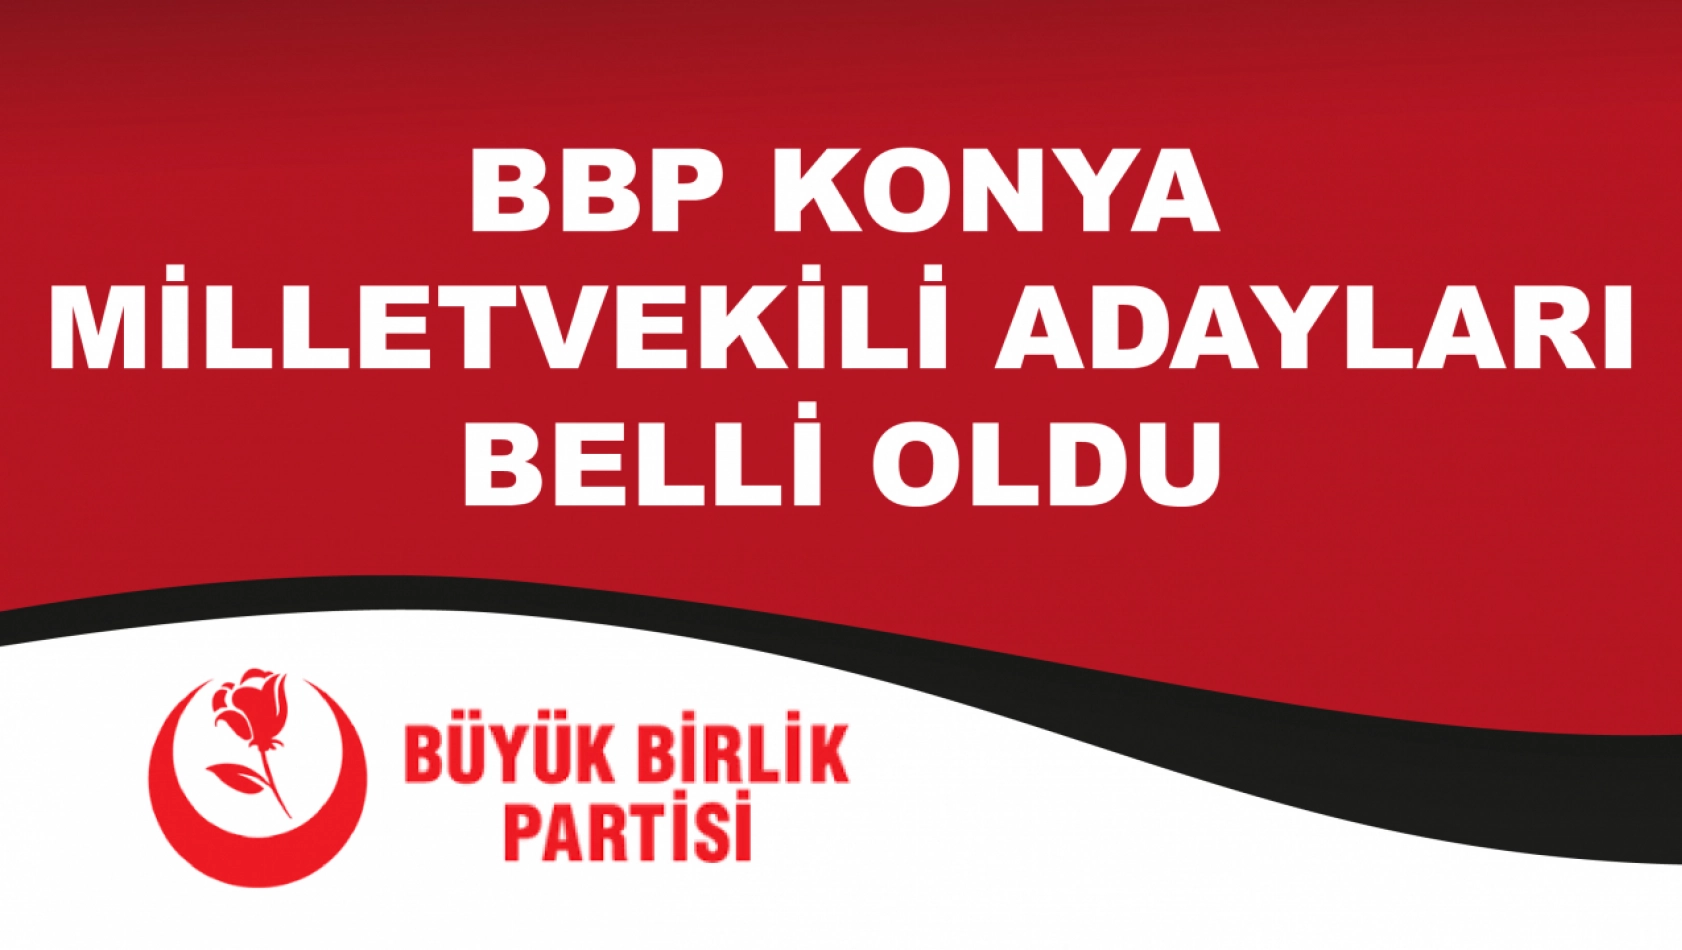 BBP Konya milletvekili adayları açıklandı